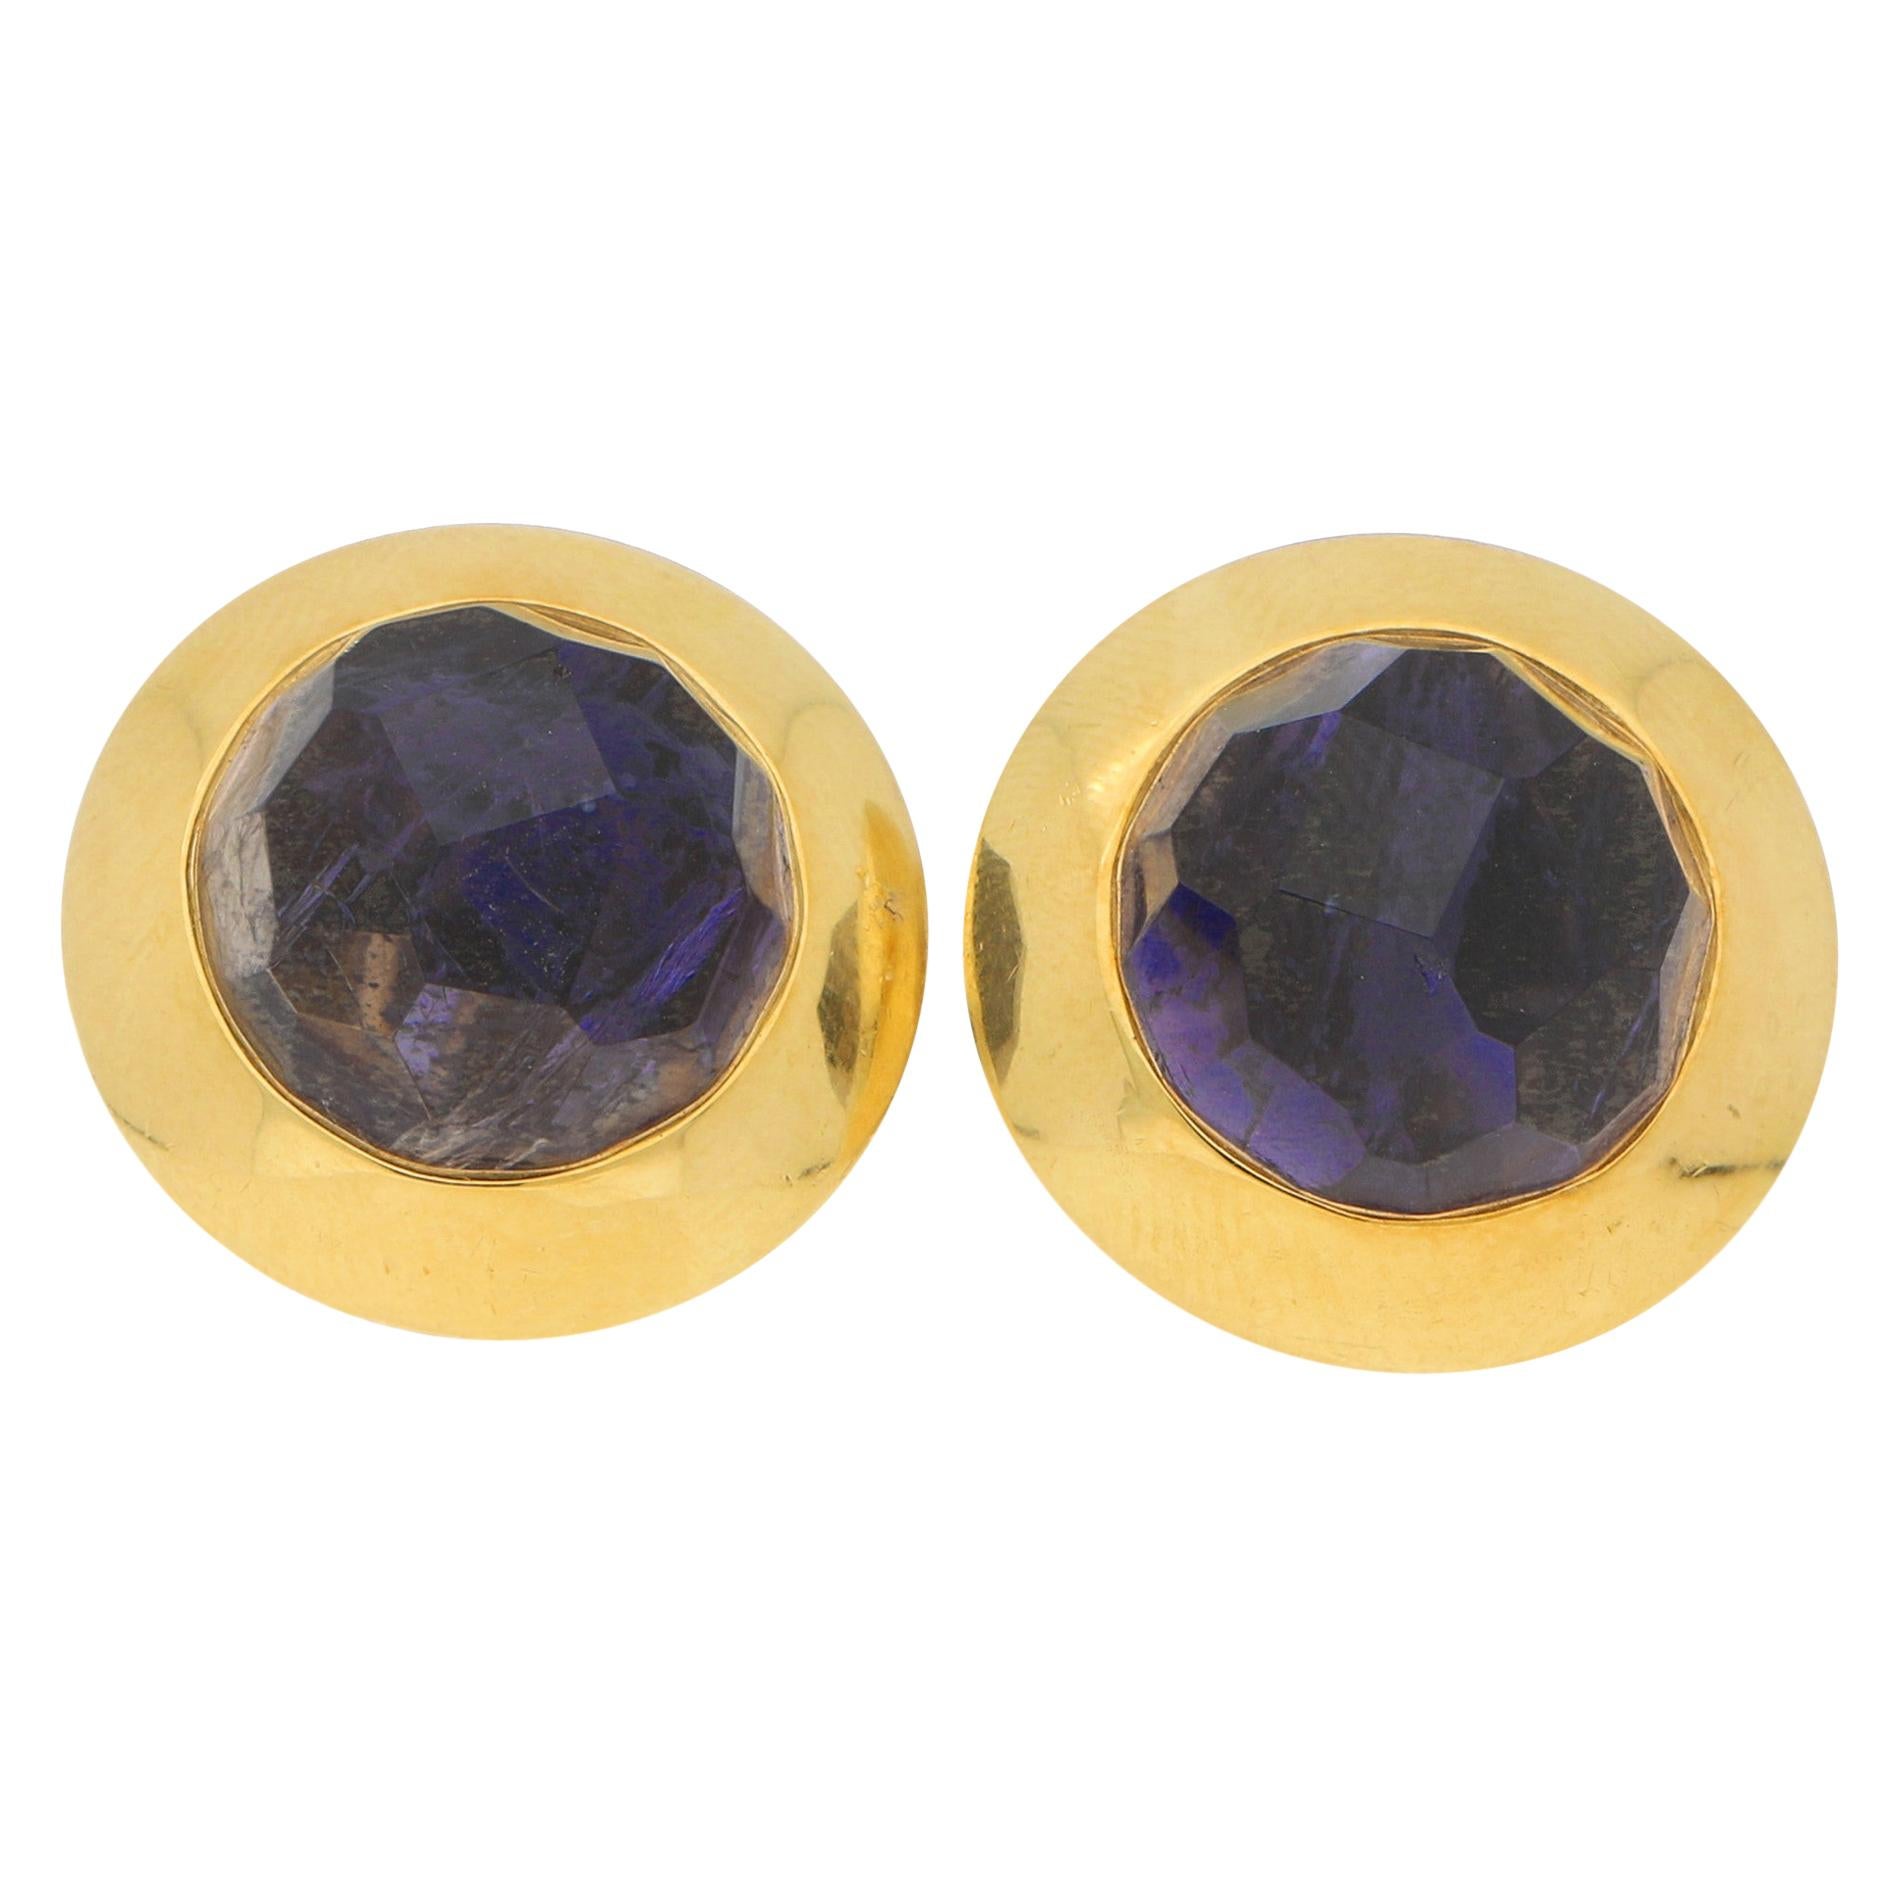 Pomellato Purple Iolite Earrings in 18k Yellow Gold